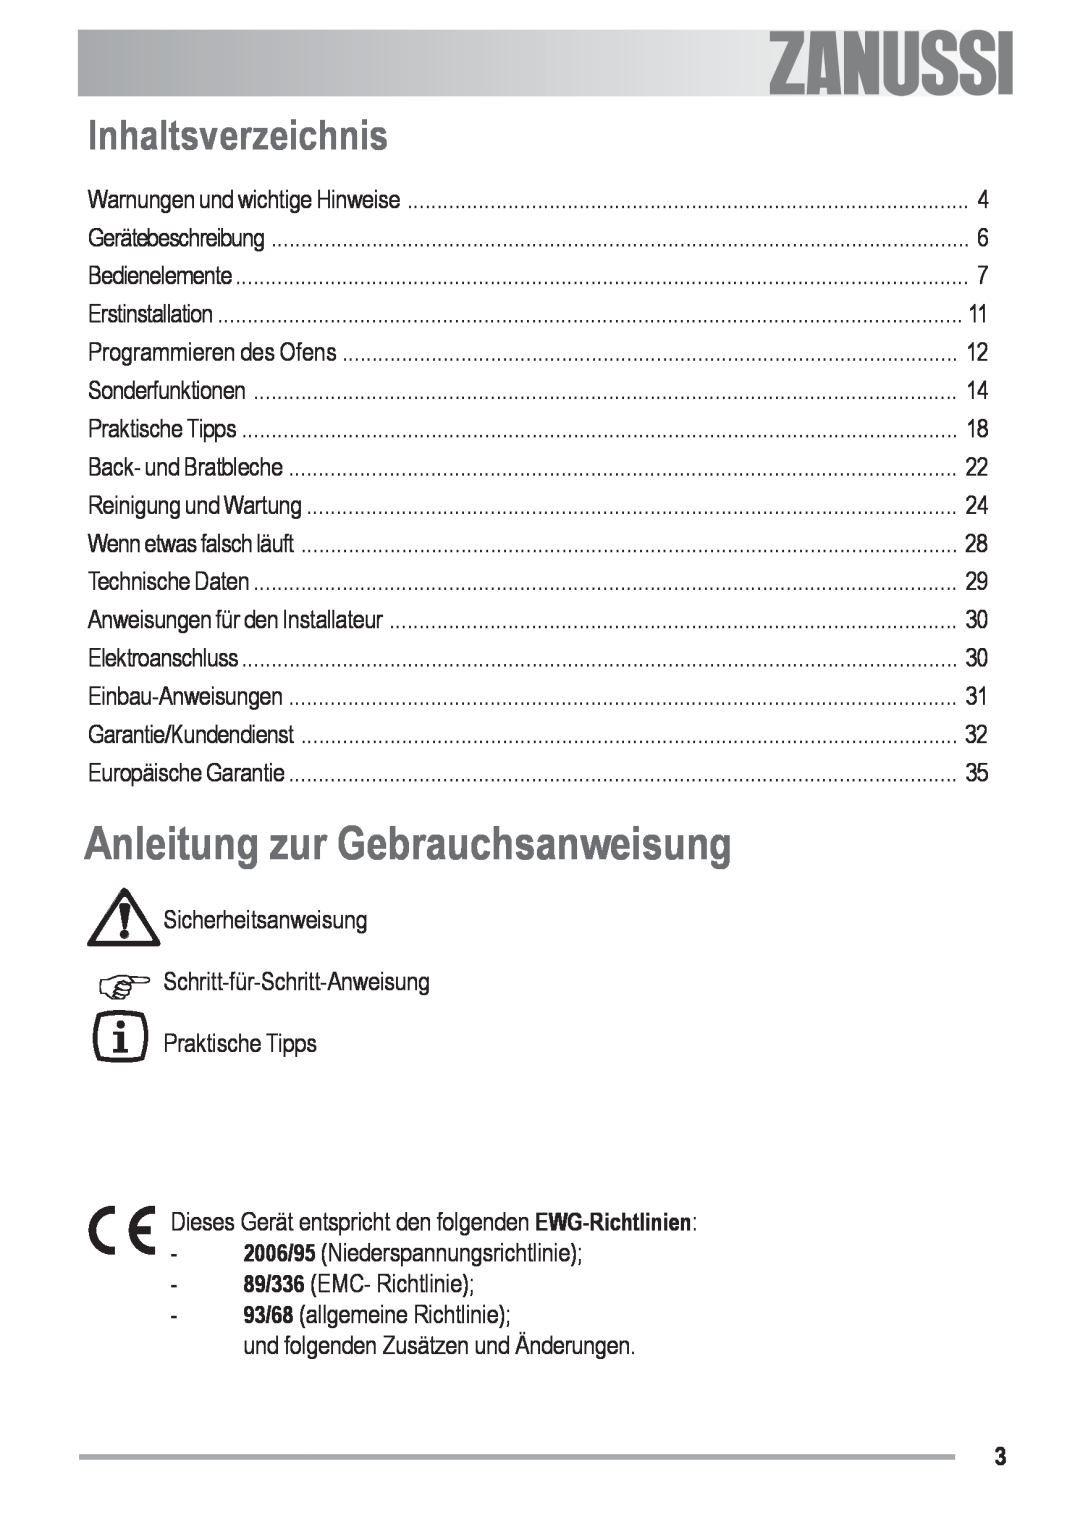 Zanussi ZOB 590 manual Anleitung zur Gebrauchsanweisung, Inhaltsverzeichnis, Electrolux 